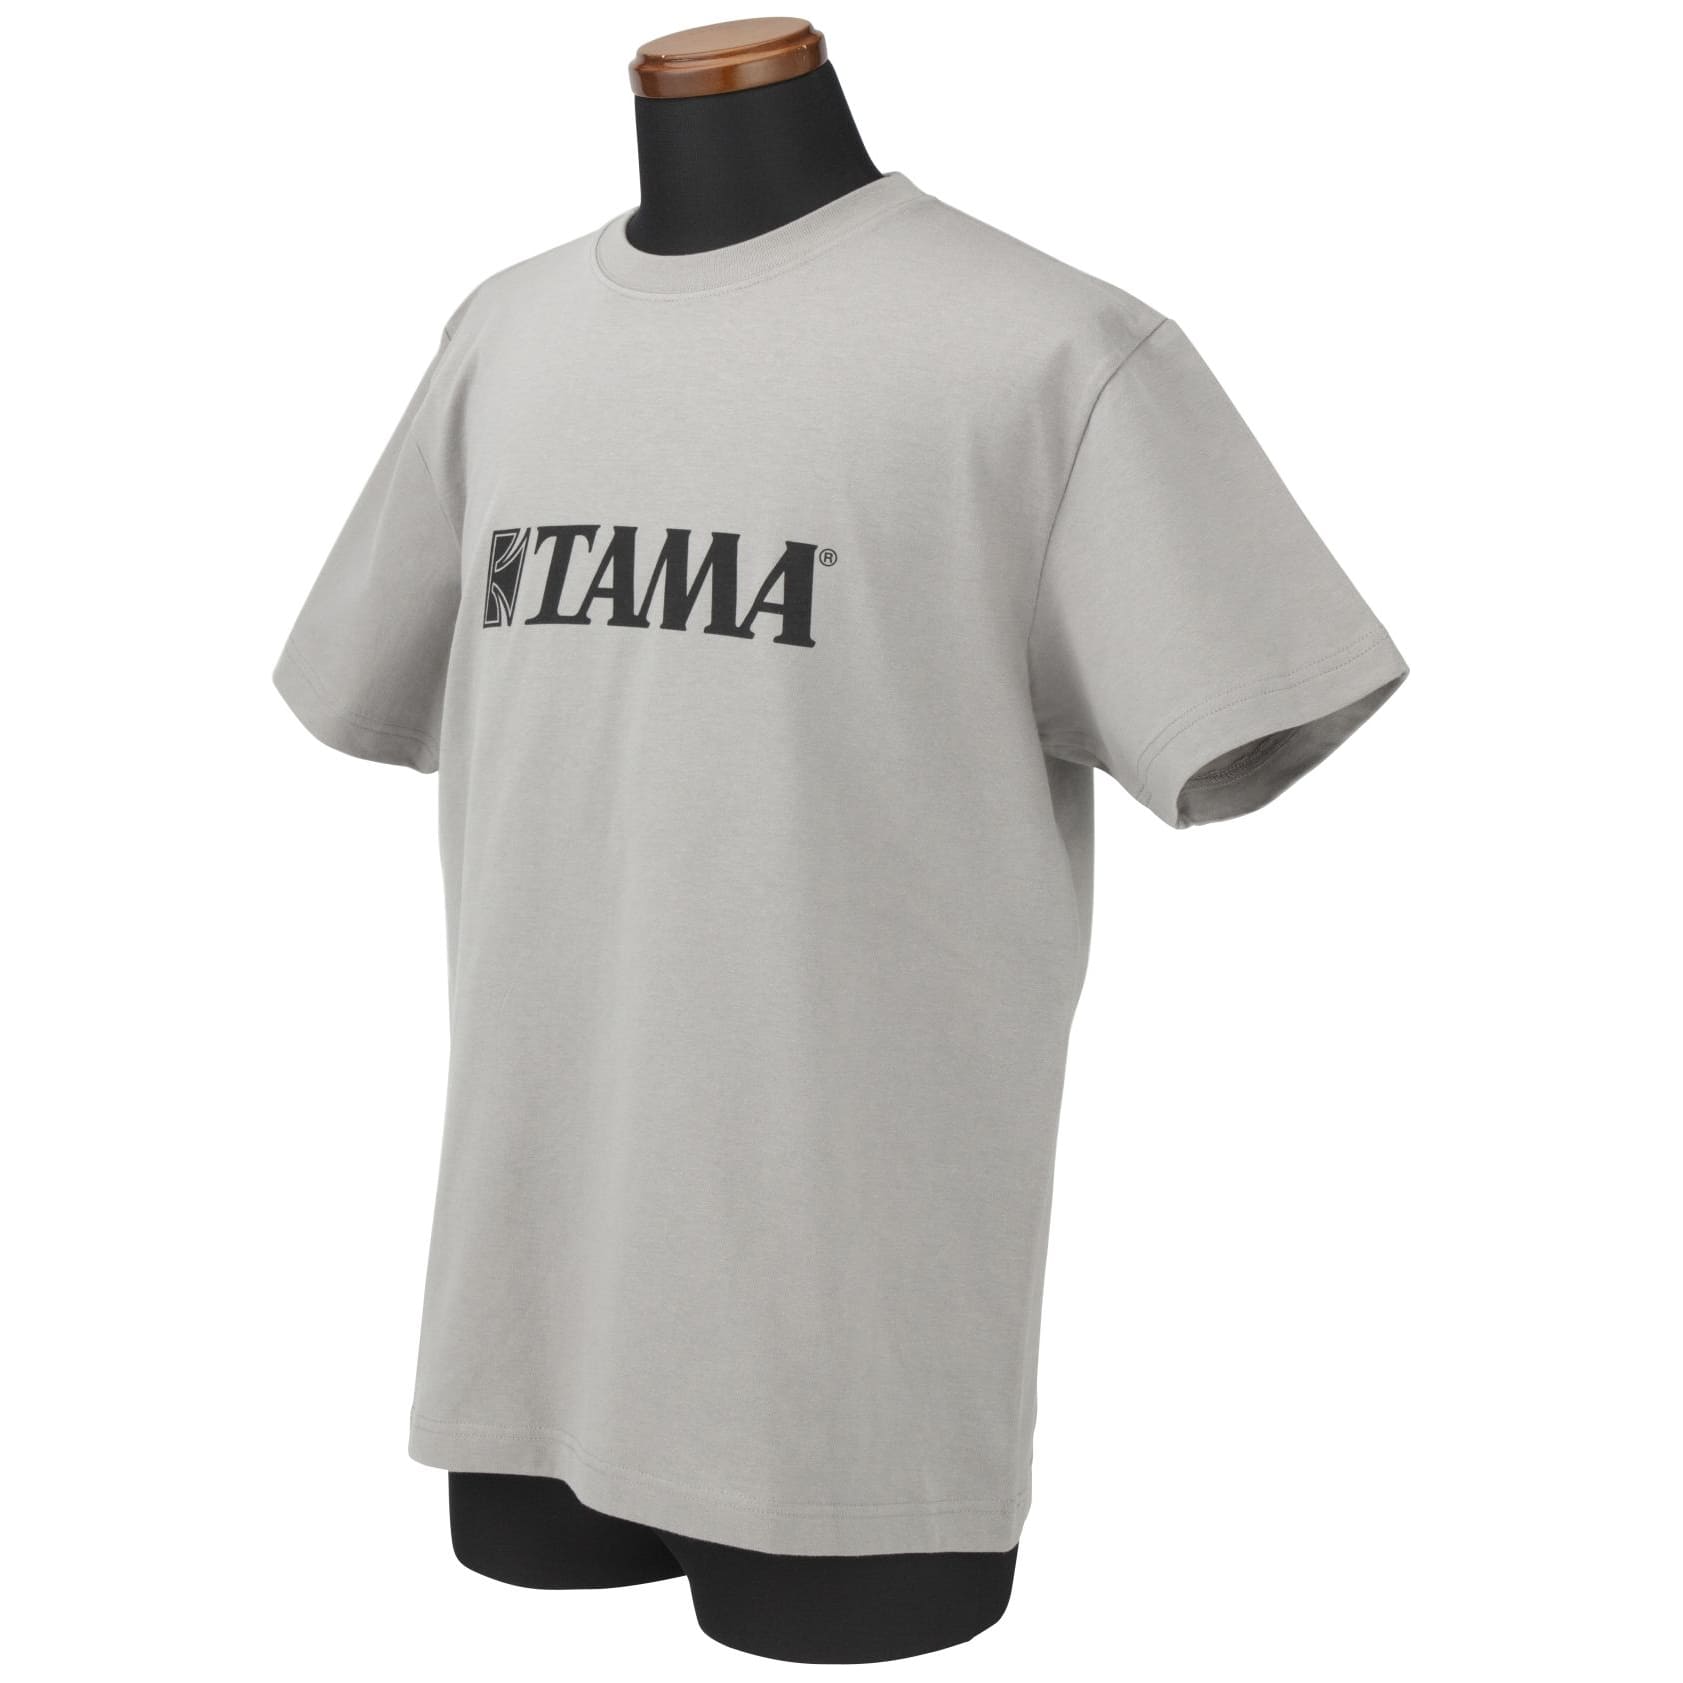 Tama TAMT005XL T-Shirt Black Logo - grau - XL